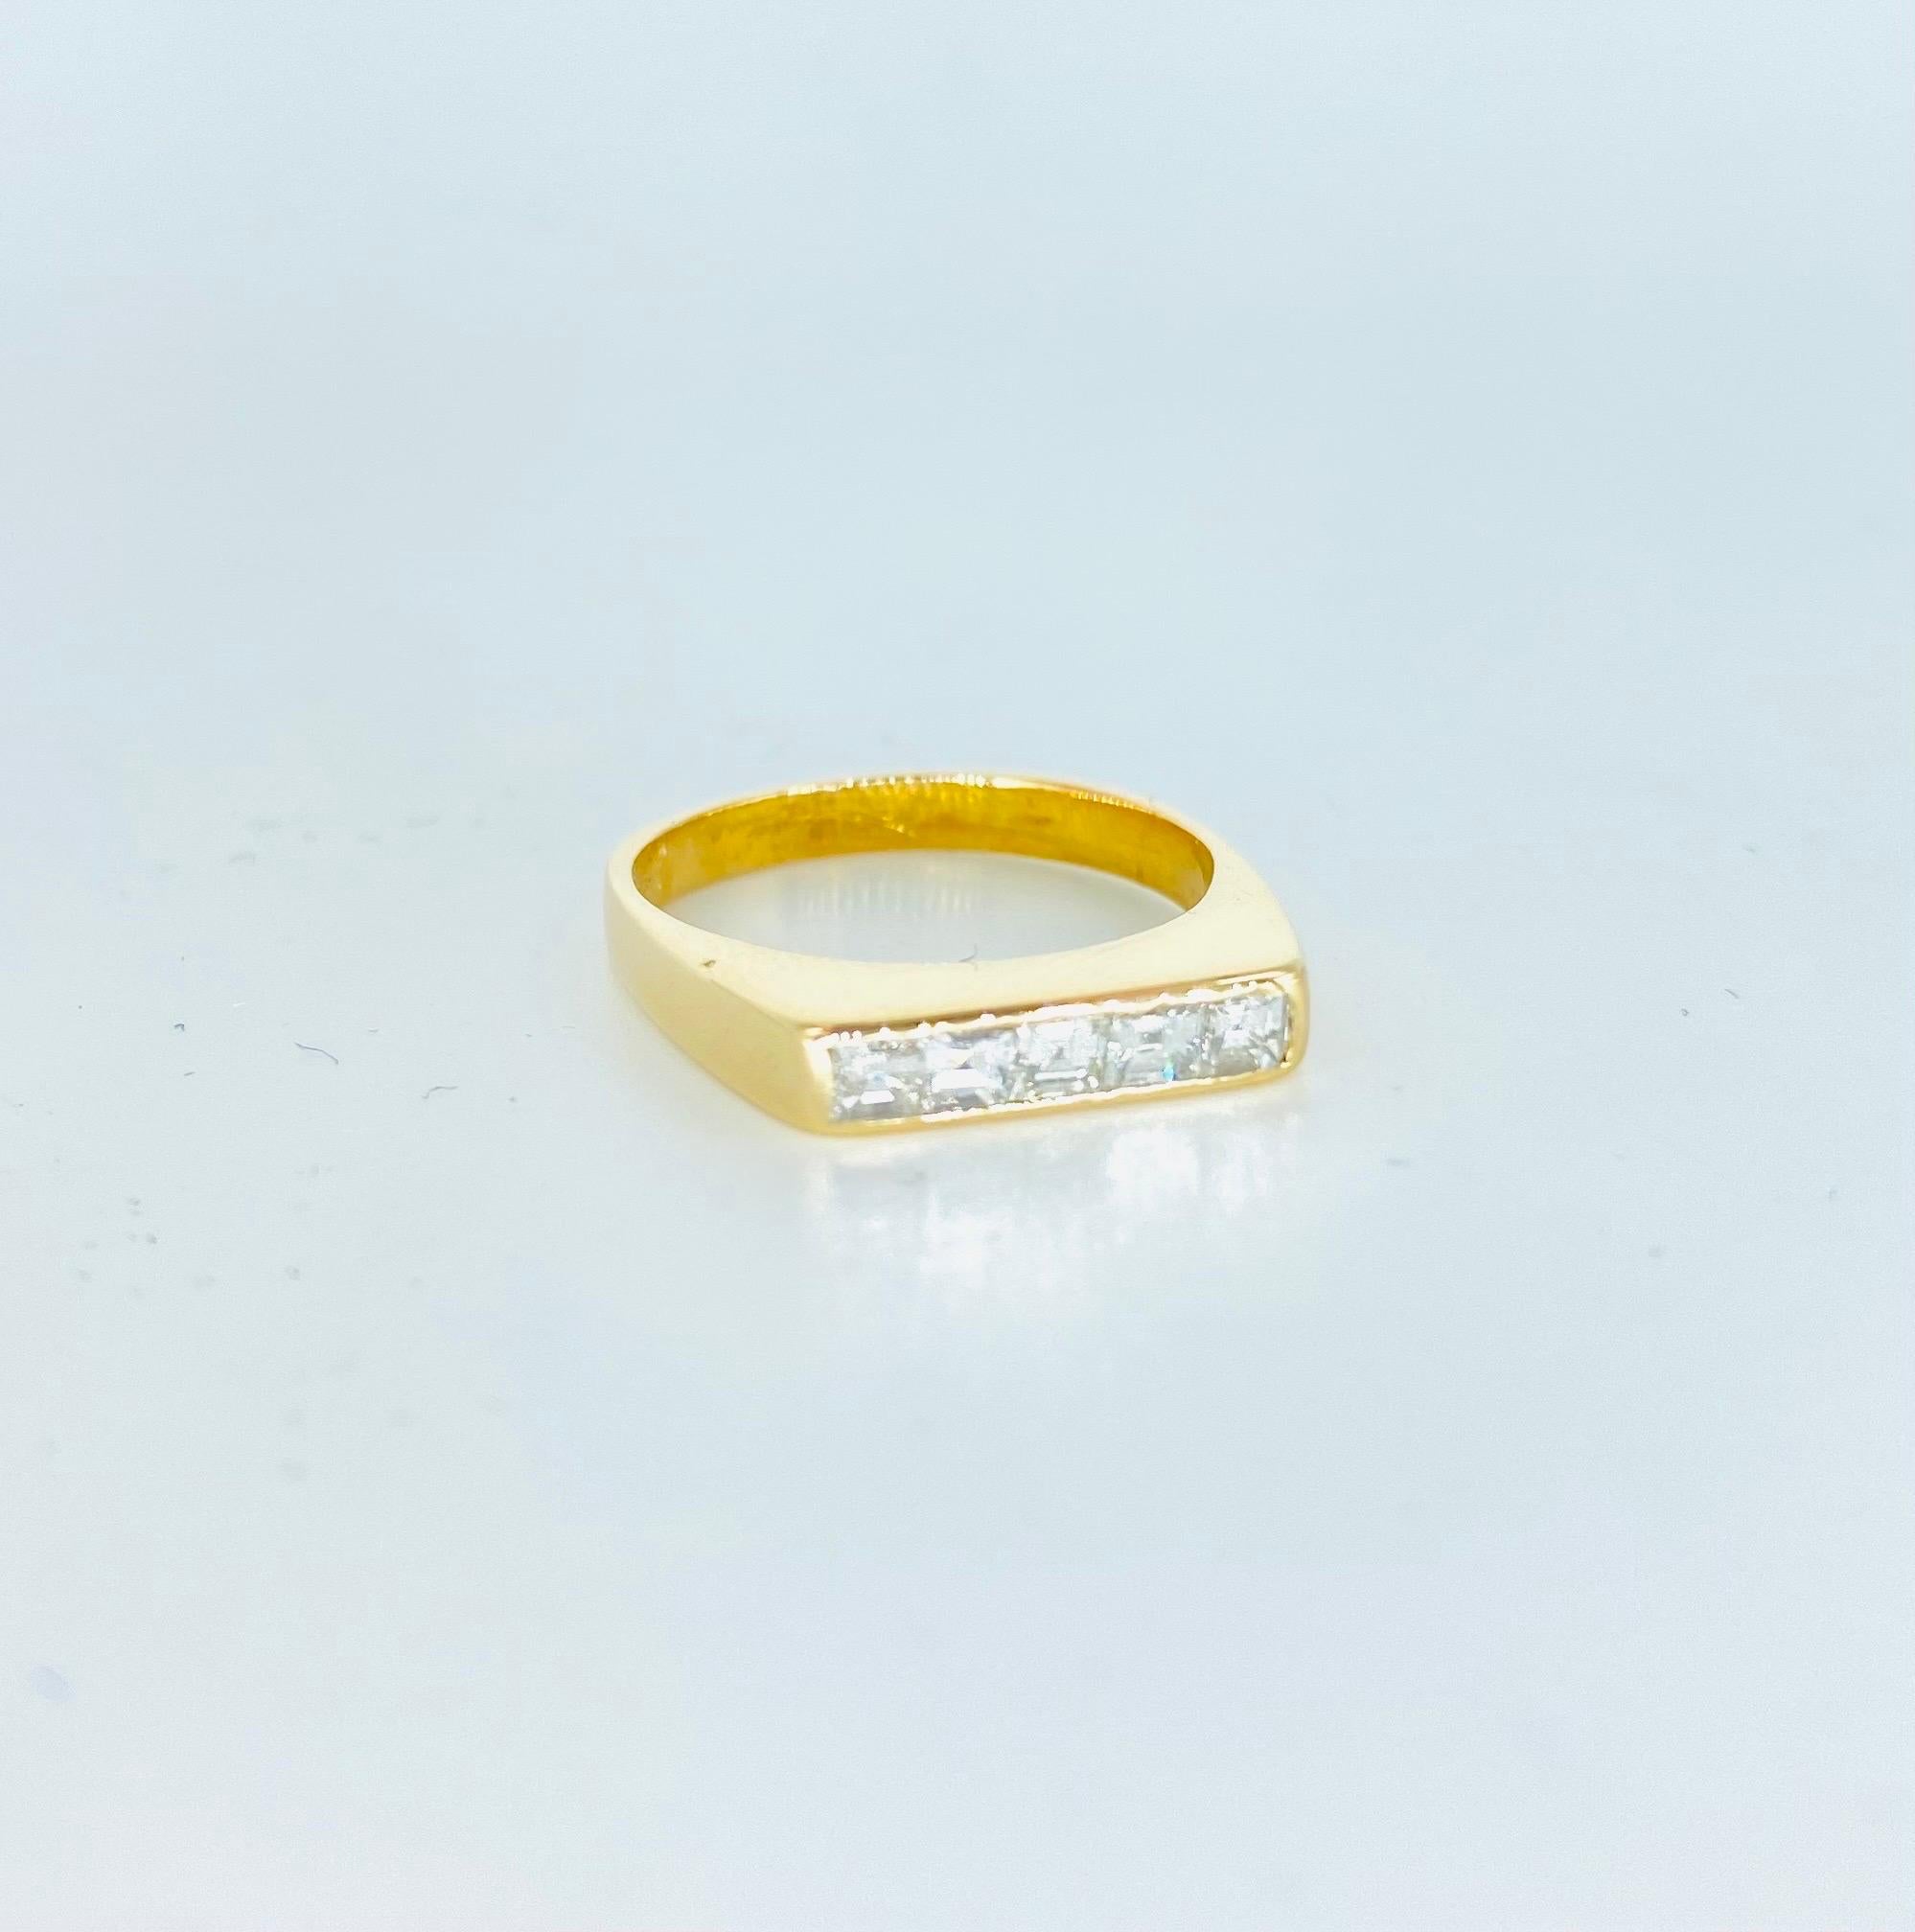 0,75 Karat Diamantring mit fünf Steinen im Asscher-Schliff. Der Ring ist 3,25 mm breit und hat die Größe 5,75.
Der Ring ist mit 5 Diamanten im Asscher-Schliff besetzt, die jeweils ca. 0,15 Karat und insgesamt 0,75 Karat wiegen. 